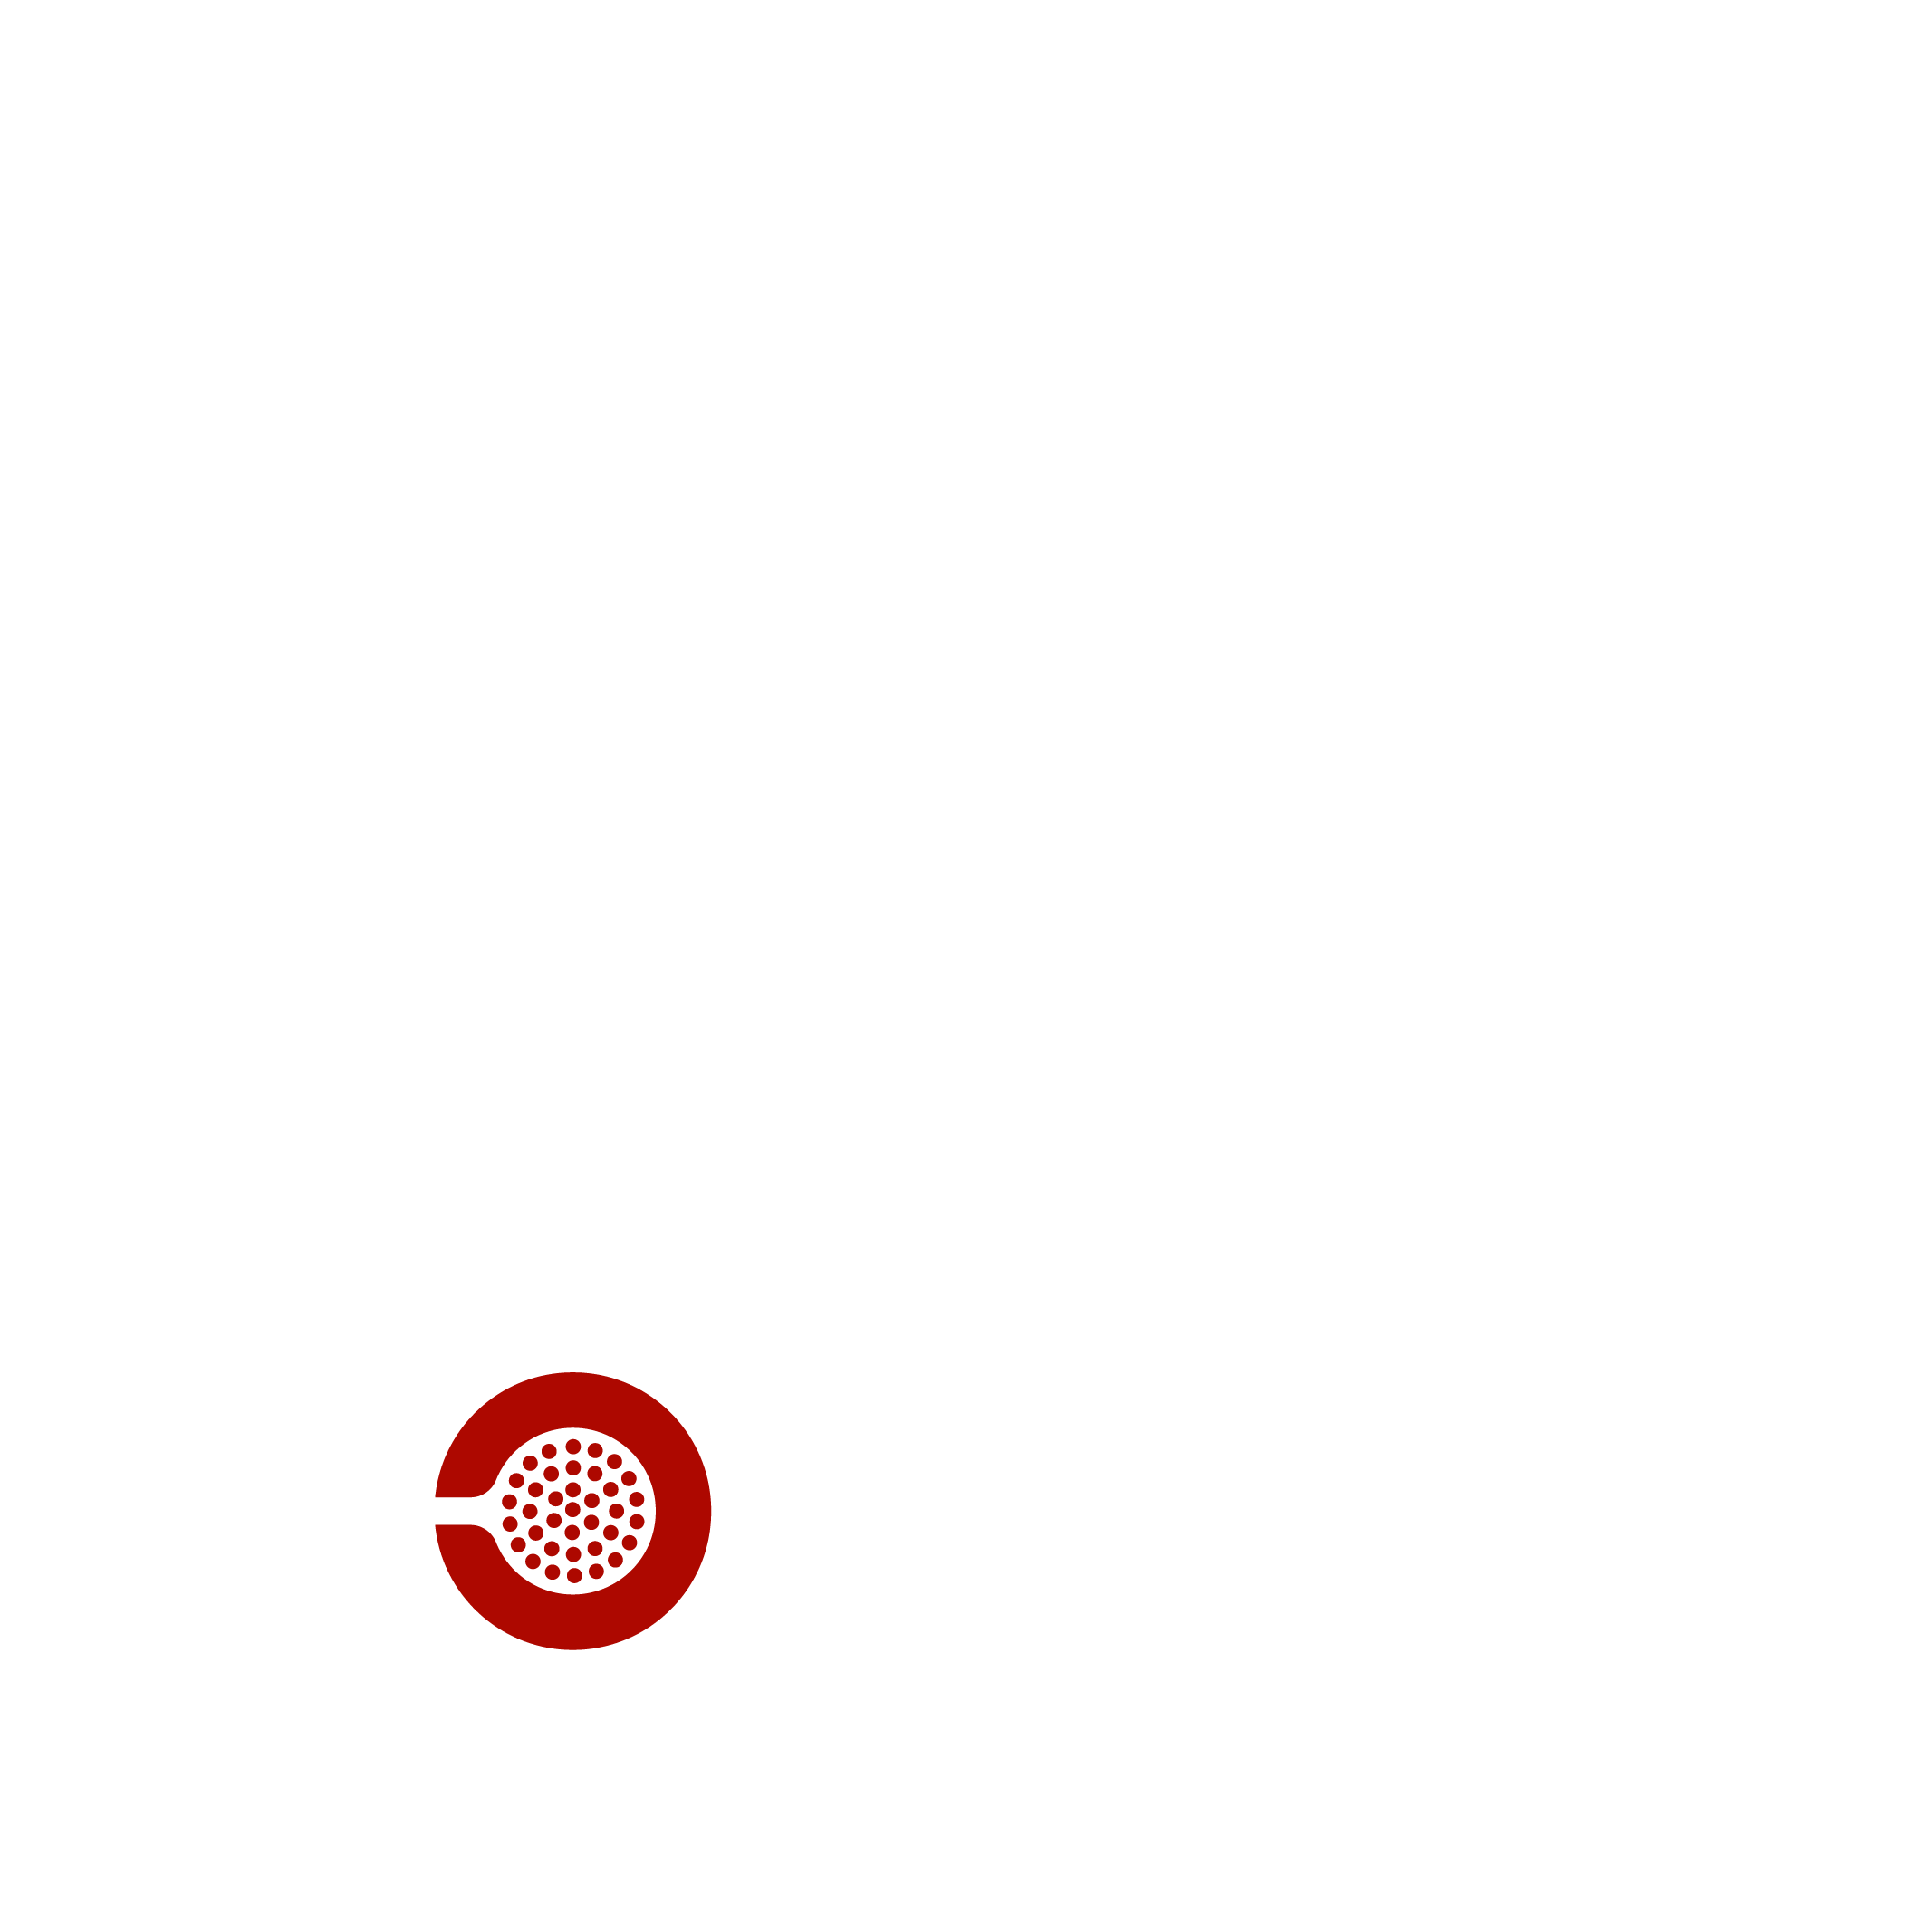 CULTURAL festival